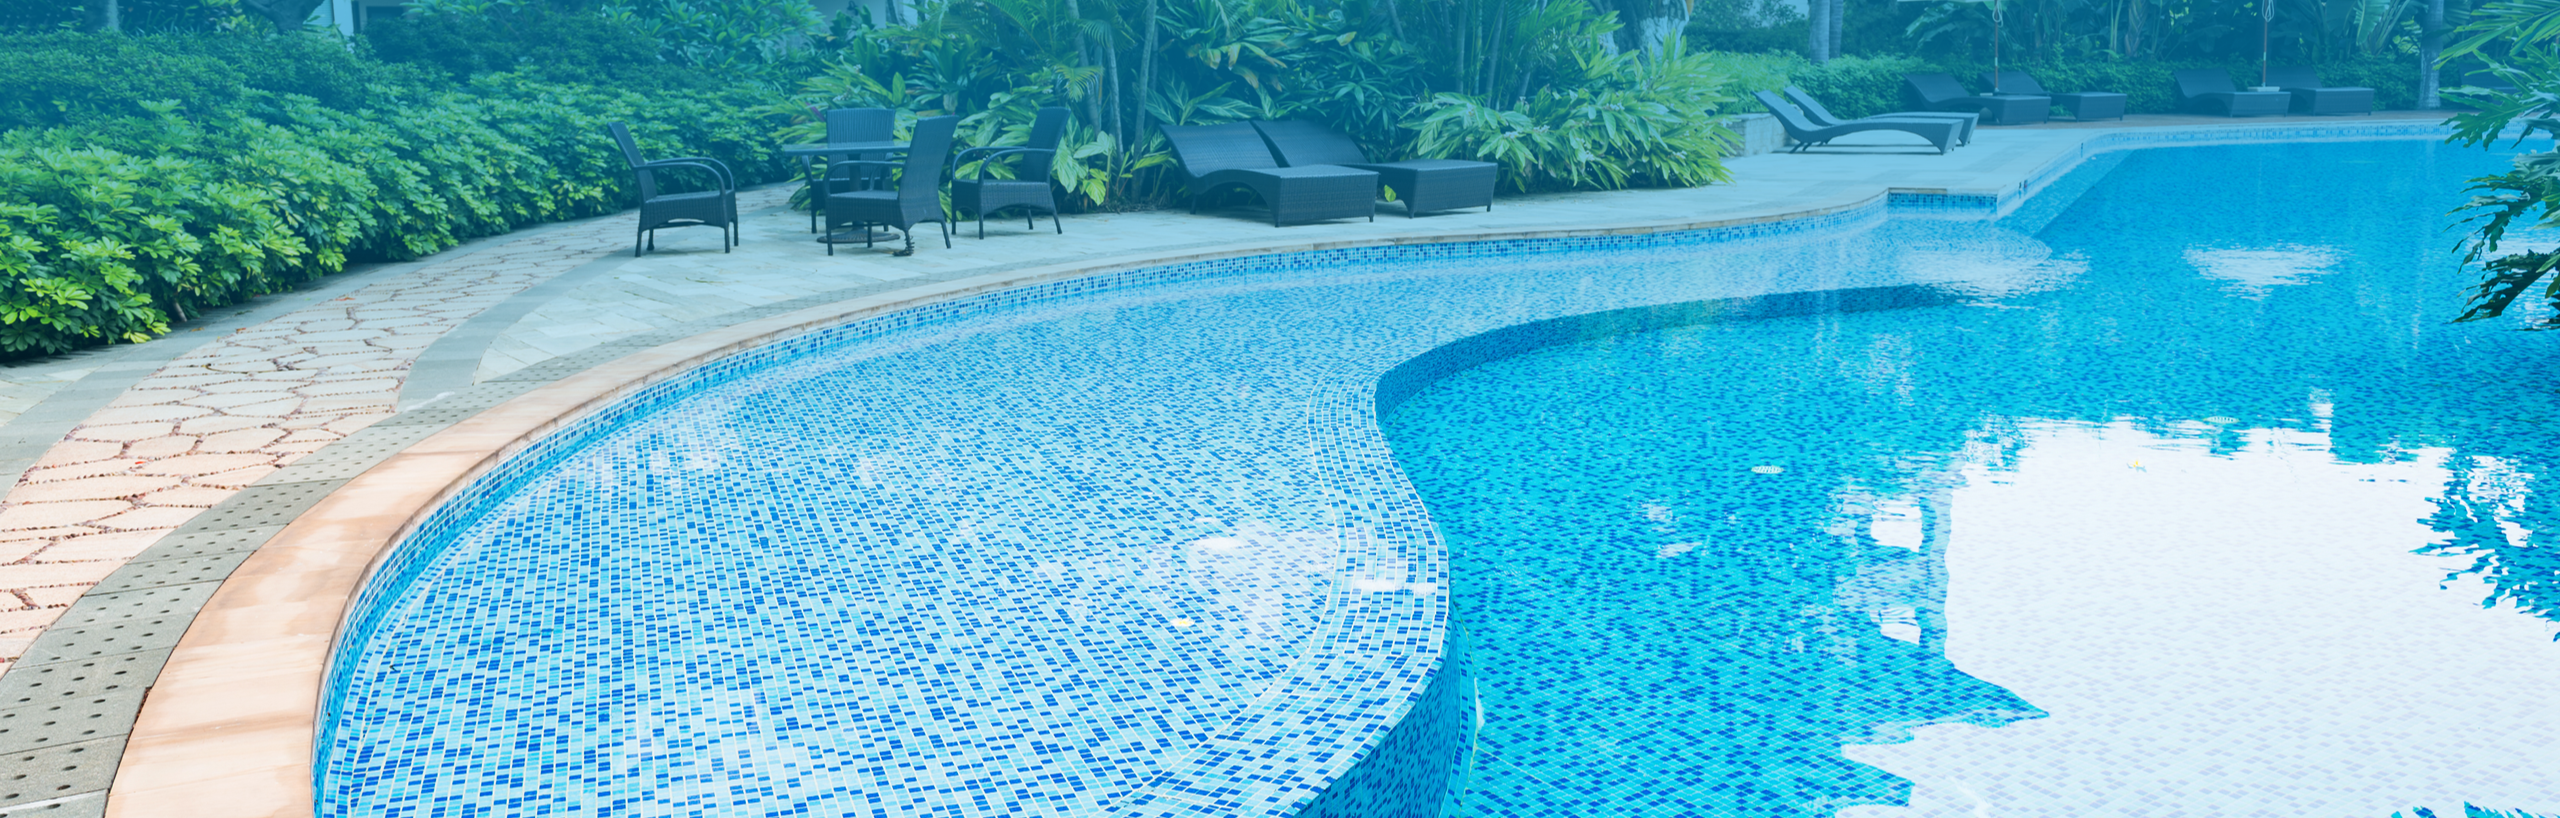 Zararlı geleneksel yöntemleri bırakın, <br>havuzunuzda Purevix teknolojisine <br>yer açın!